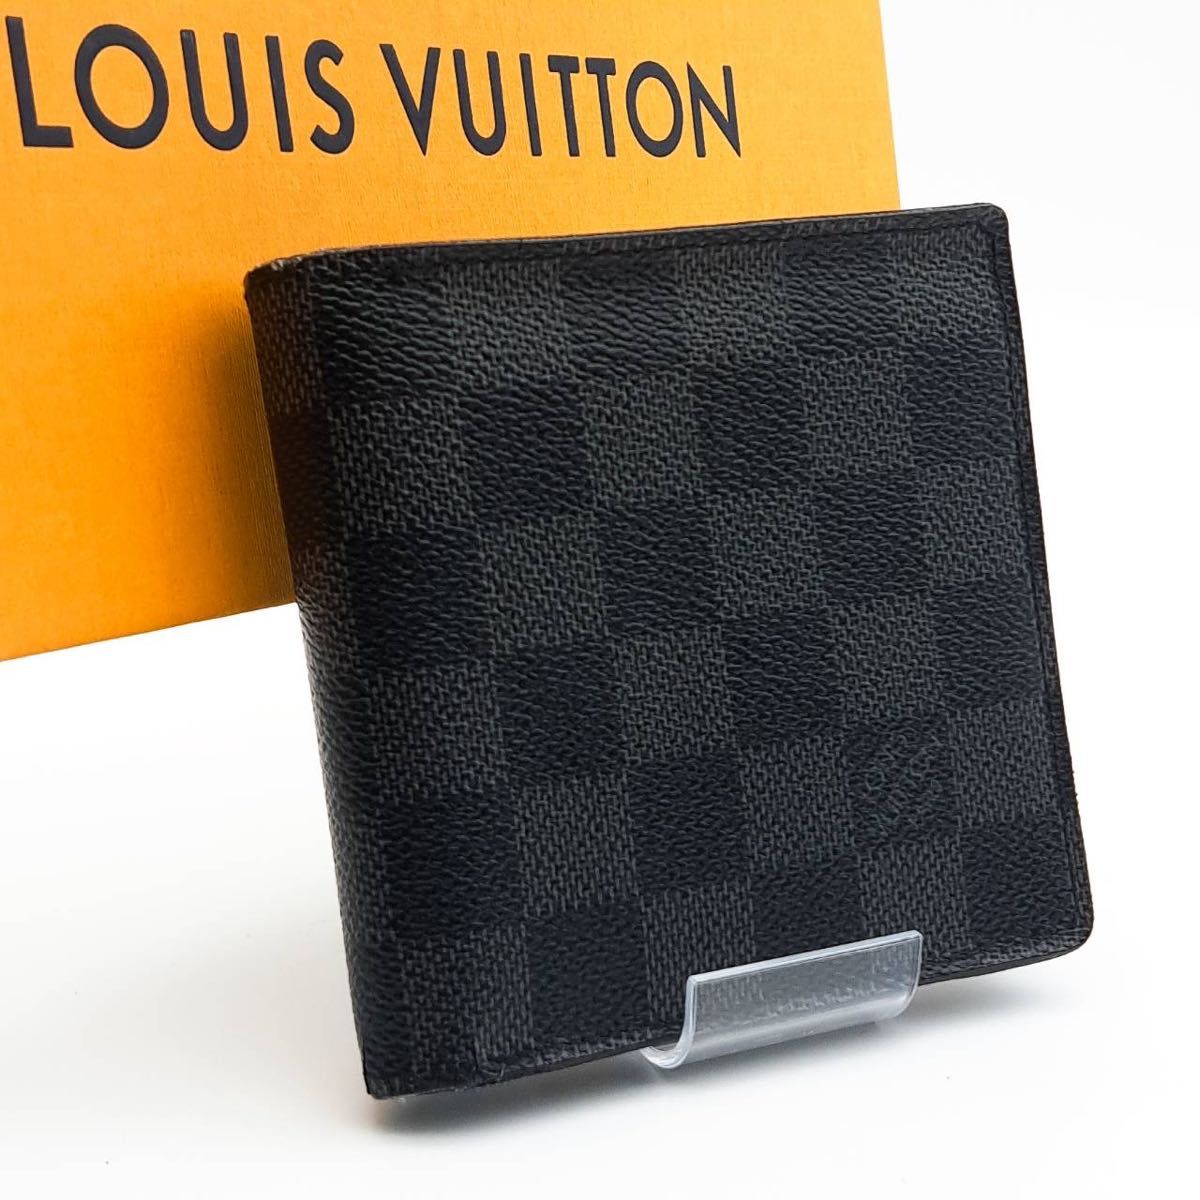 LOUIS VUITTON最高級美品 ダミエグラフィット ポルトフォイユ マルコ 二つ折り財布 札入れ ルイヴィトン ダミエ